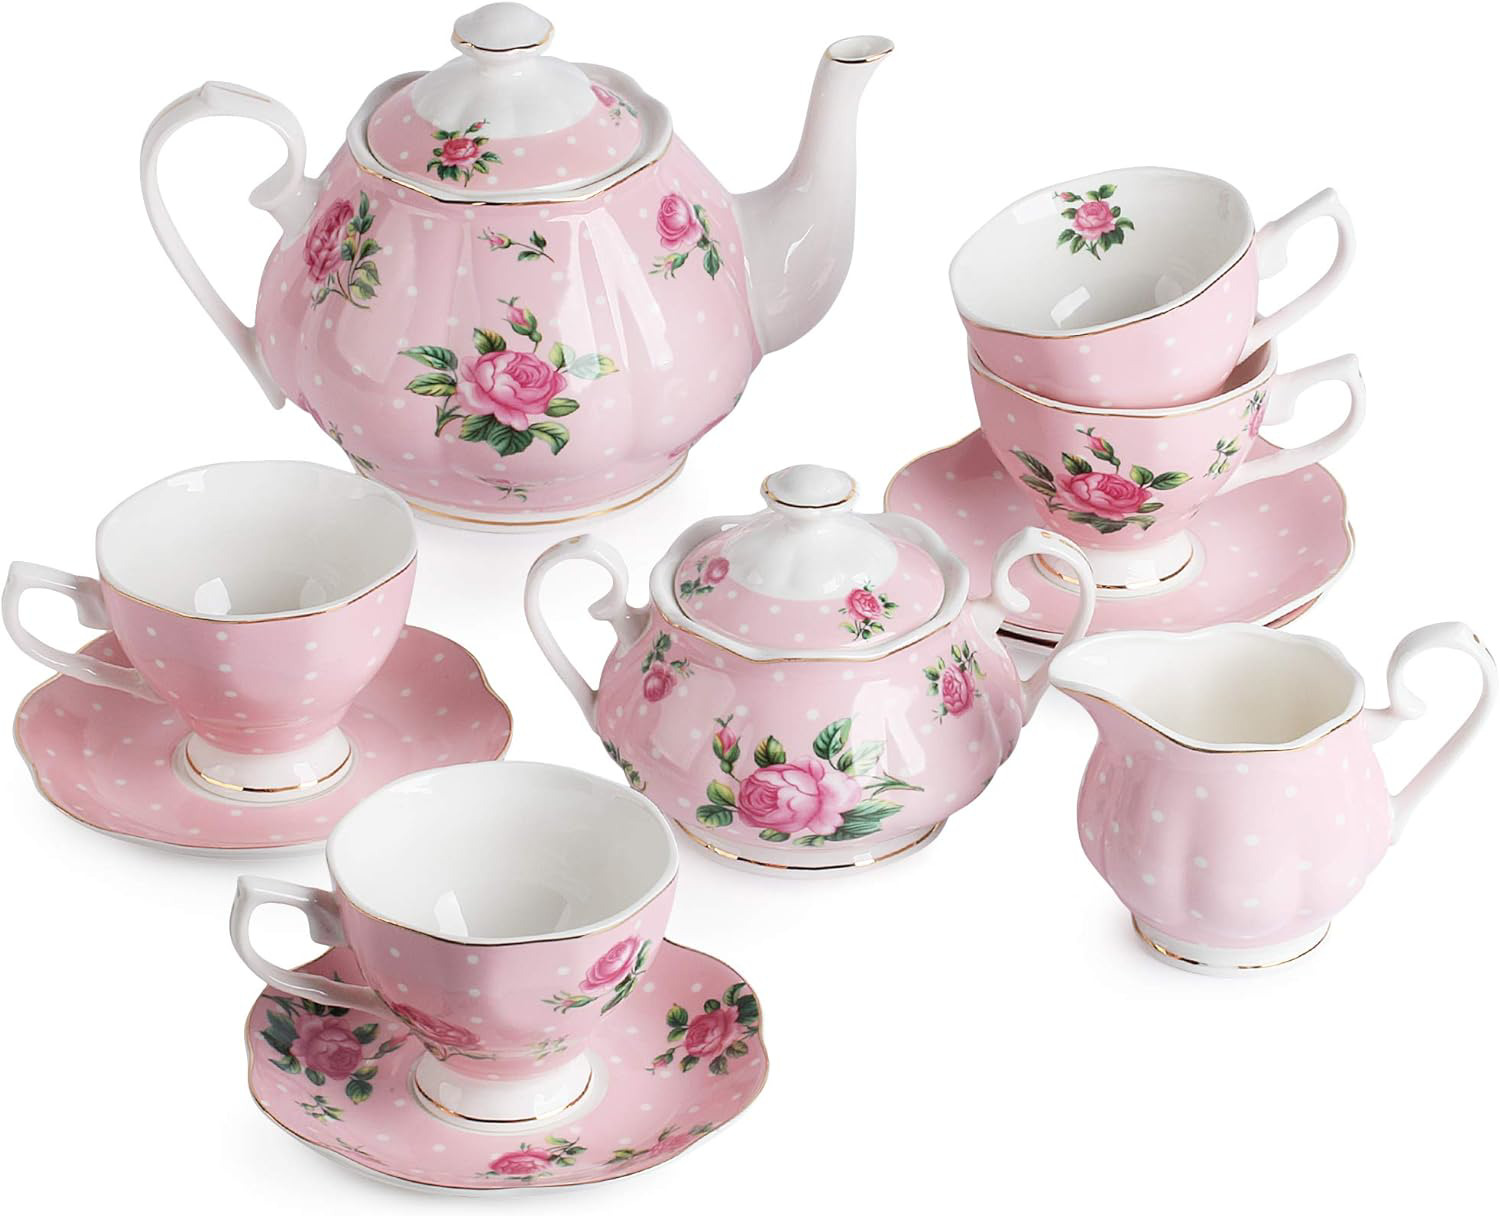 BTaT- Floral Tea Set, Tea cups 8oz, Tea Pot 38oz, Creamer and Sugar Set, Gift